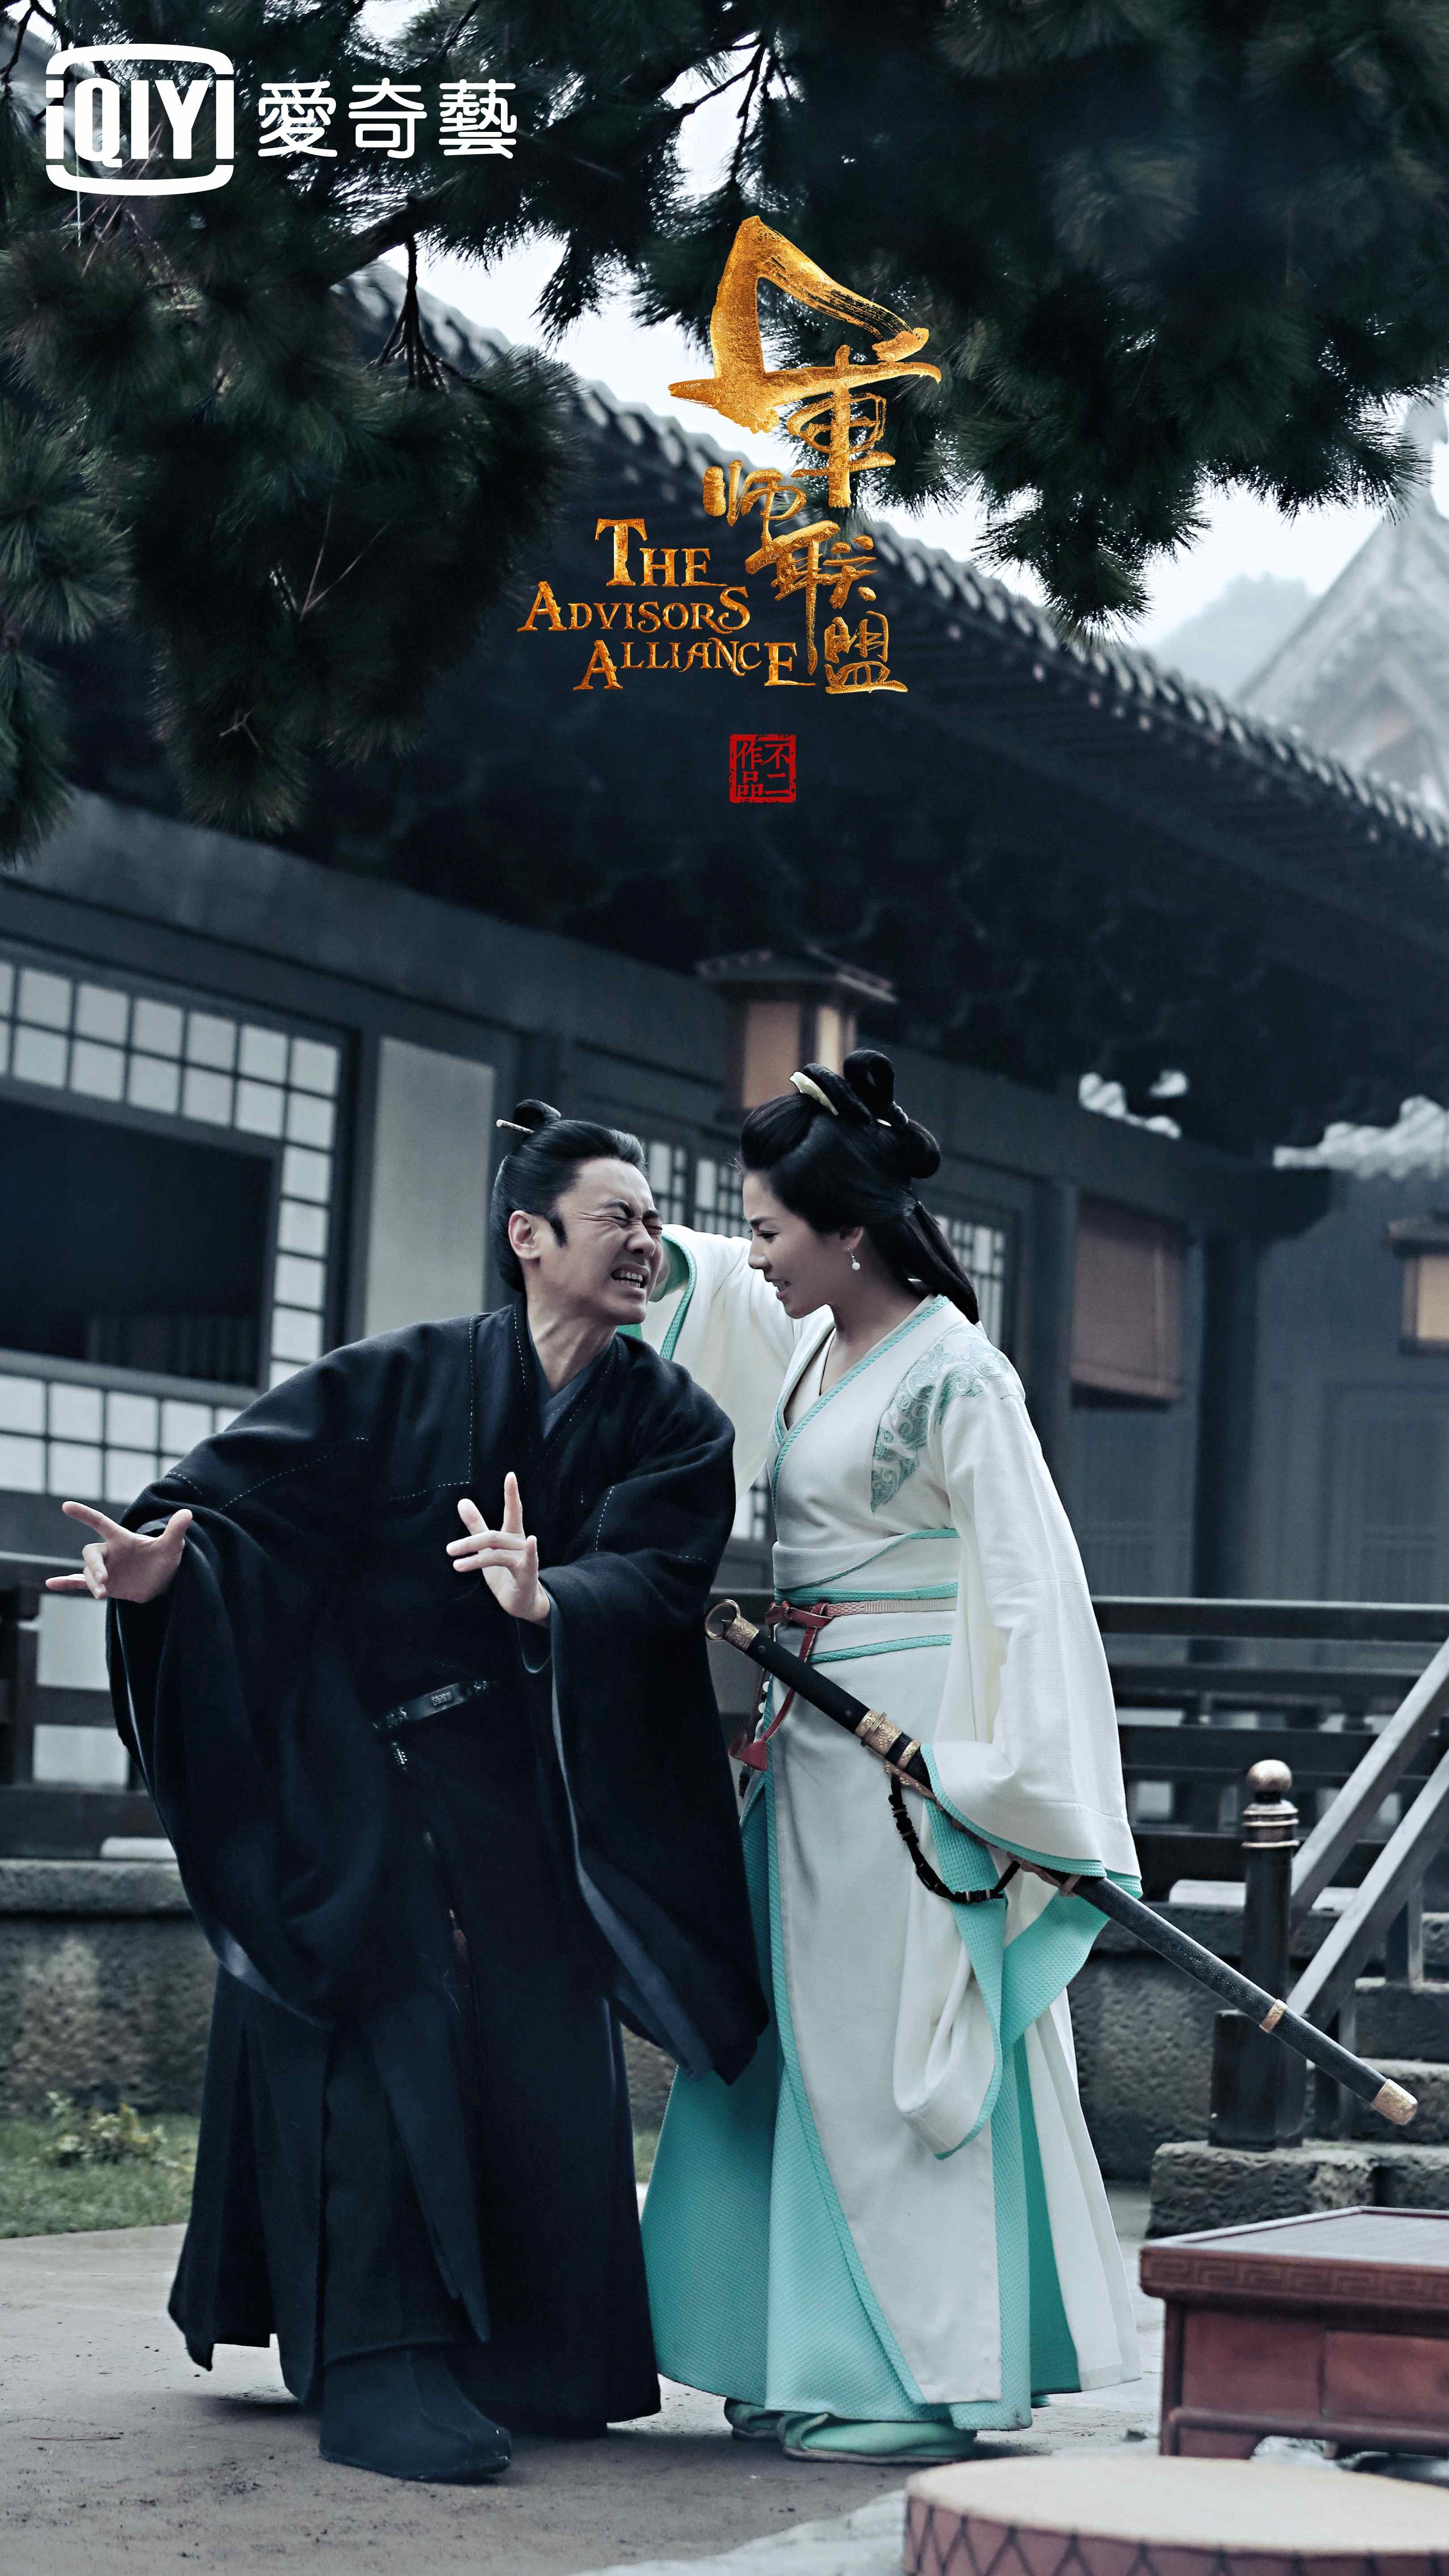 吳秀波和劉濤在劇中有許多逗趣互動